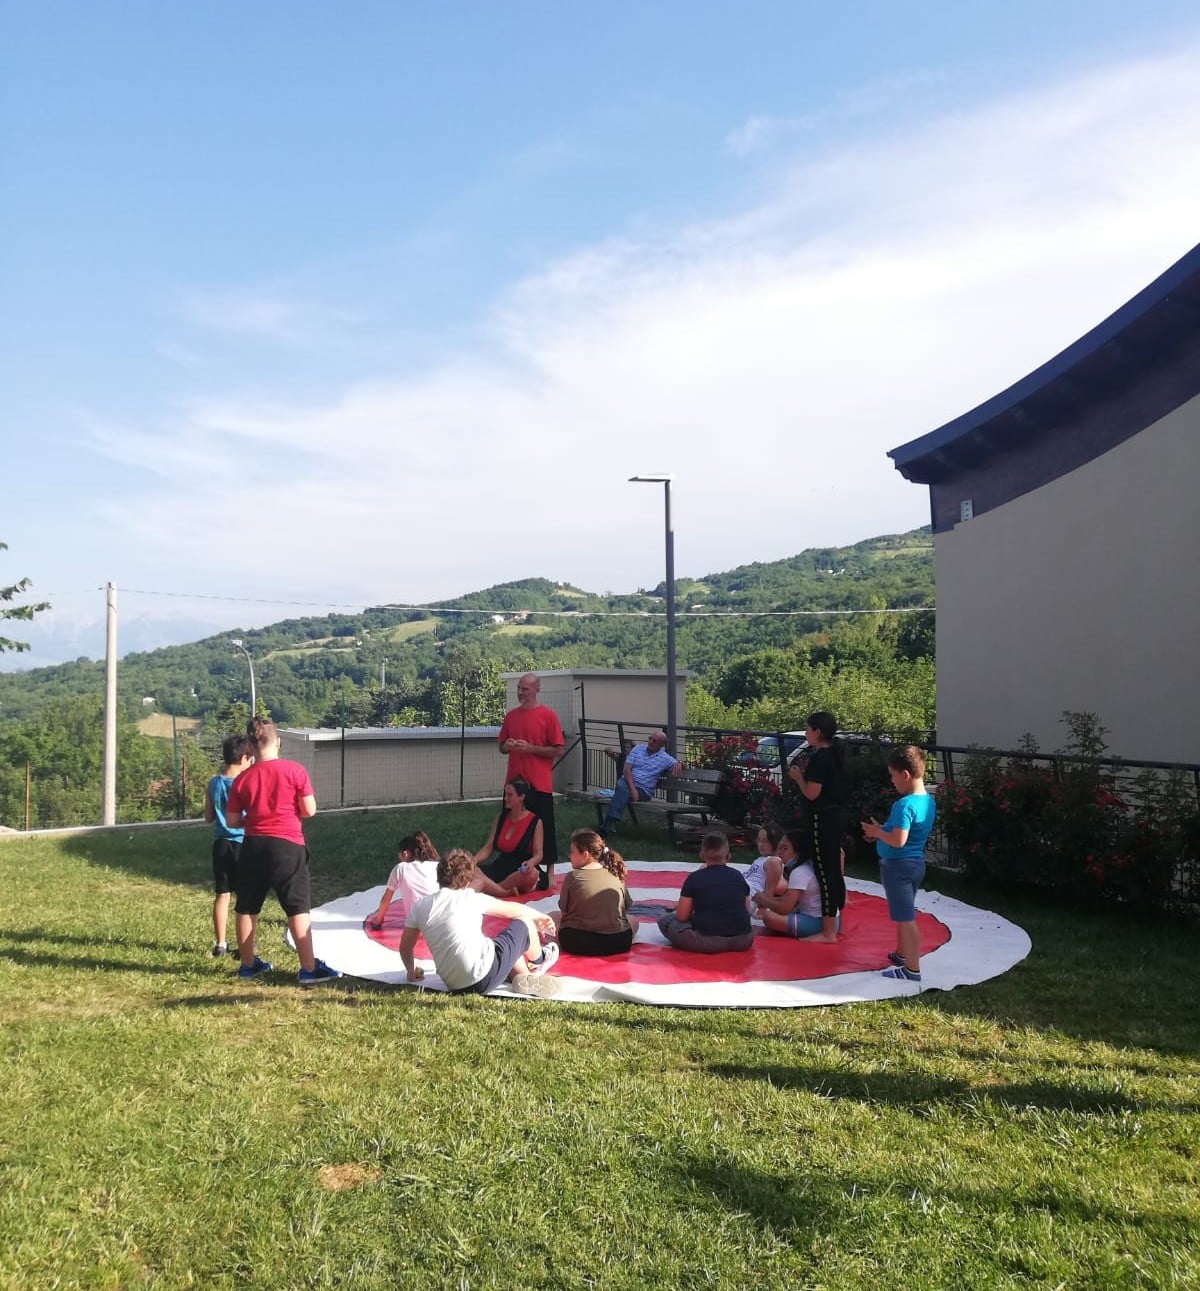 Tutti in cerchio sul grande tappeto bianco e rosso per partecipare al Circo Sociale: condividere e imparare non è mai stato così divertente come con Valentina Floro e Cristiano Coia del Circo TiC - La Tenda in Circolo!